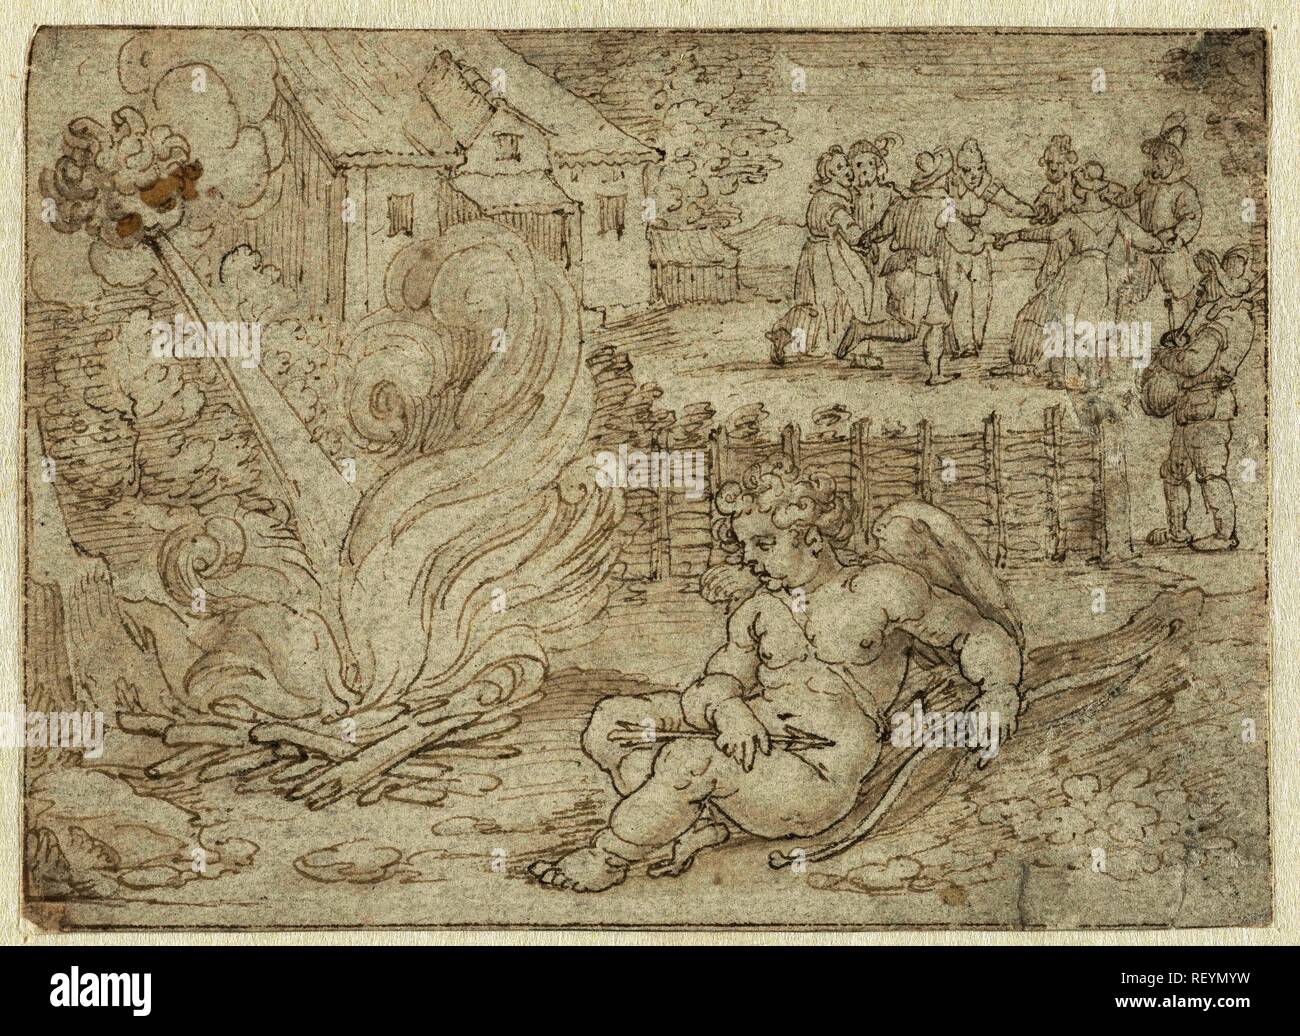 Ziel van mijn ziel. Ame de mon Ame (title on object). Draughtsman: Pieter Serwouters. Dating: 1606 - 1611. Measurements: h 86 mm × w 120 mm. Museum: Rijksmuseum, Amsterdam. Stock Photo